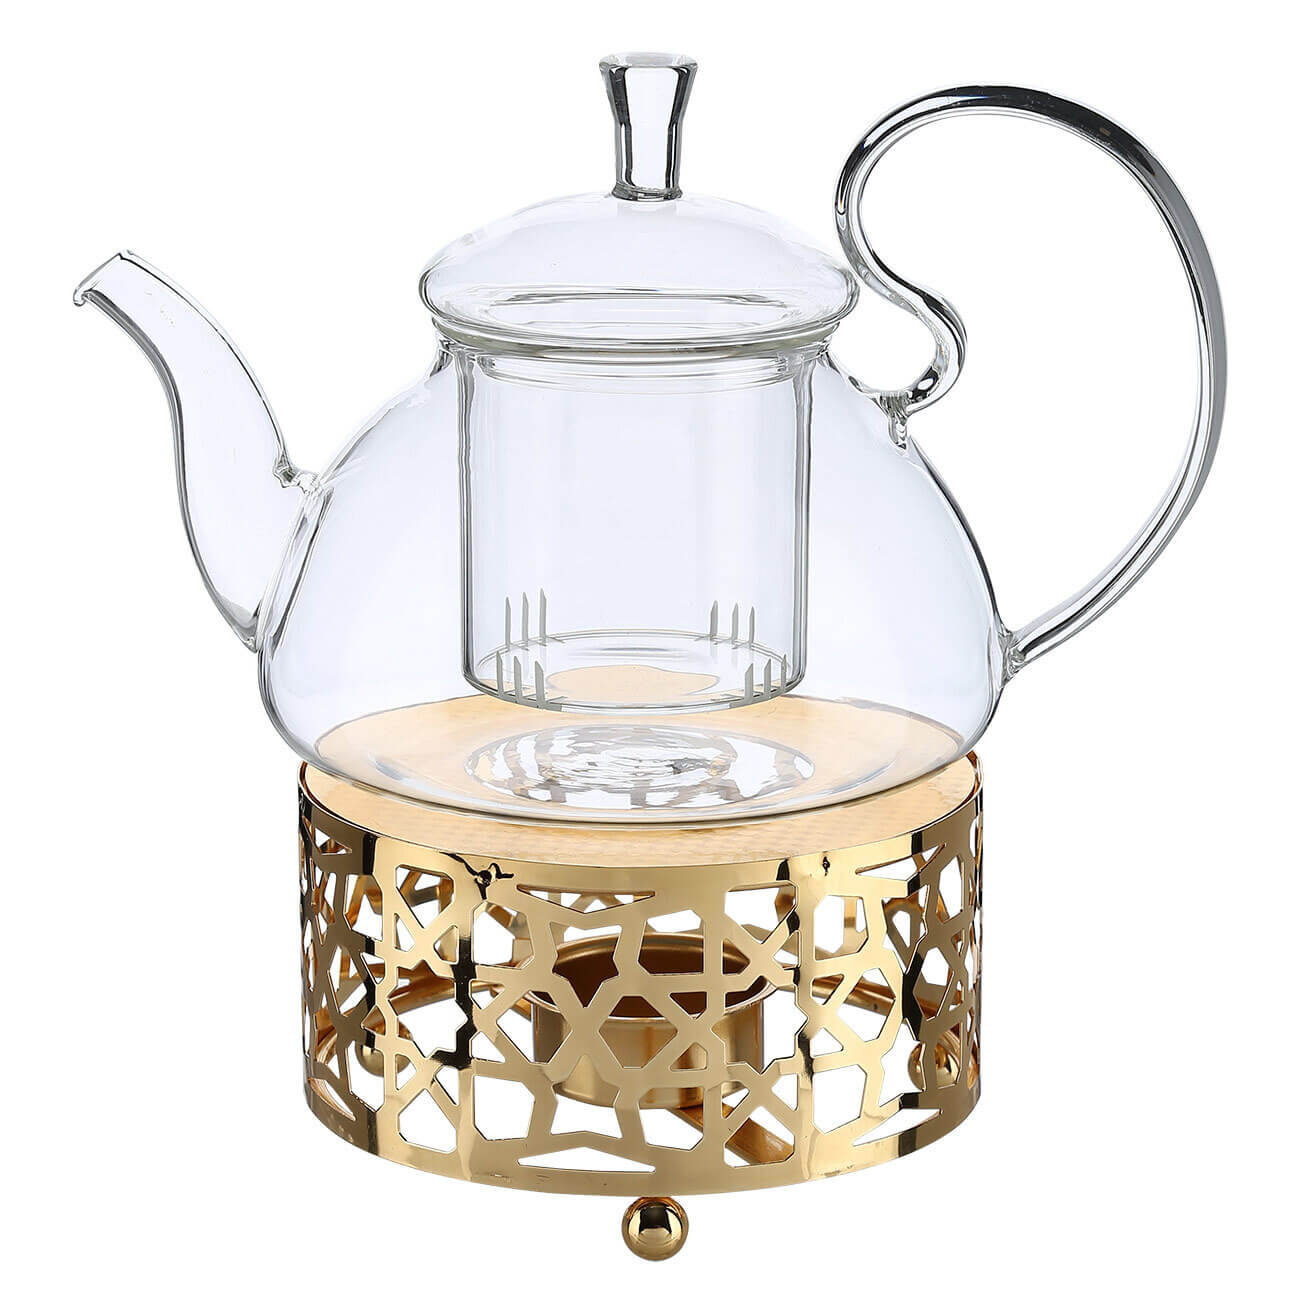 чайник заварочный 1 5 л стекло б clear Чайник заварочный, 800 мл, с подогревом, стекло Б/металл, золотистый, Ellan